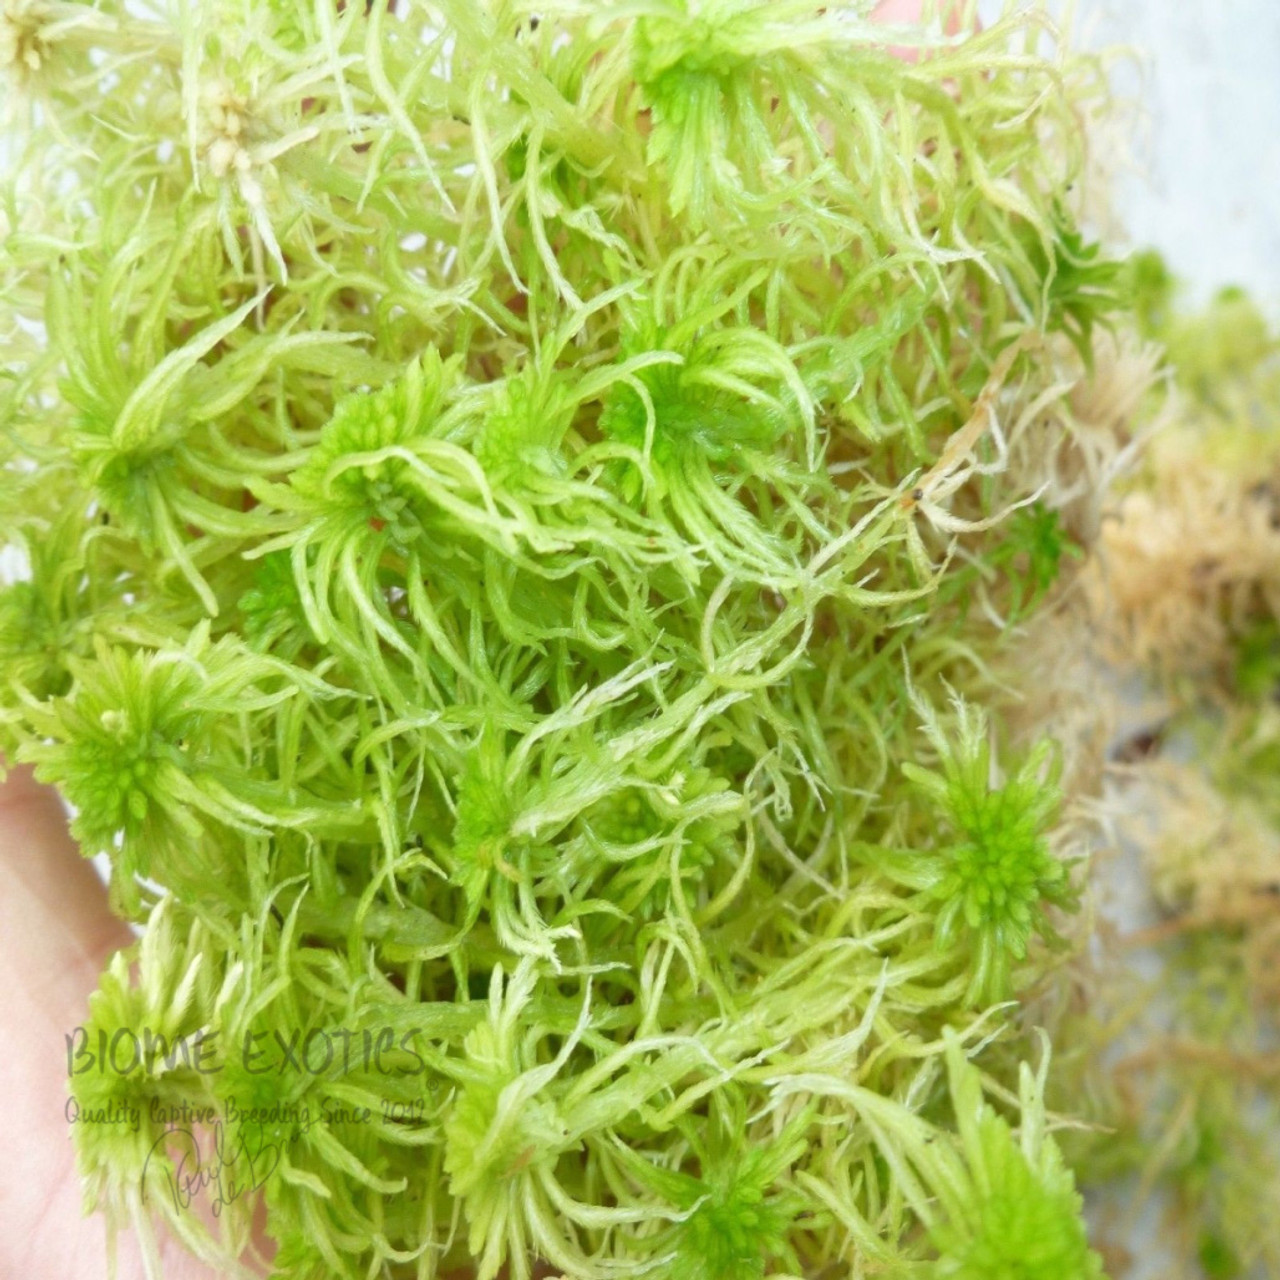 Besgrow Spagmoss 500g Premier New Zealand Sphagnum Moss – Rare